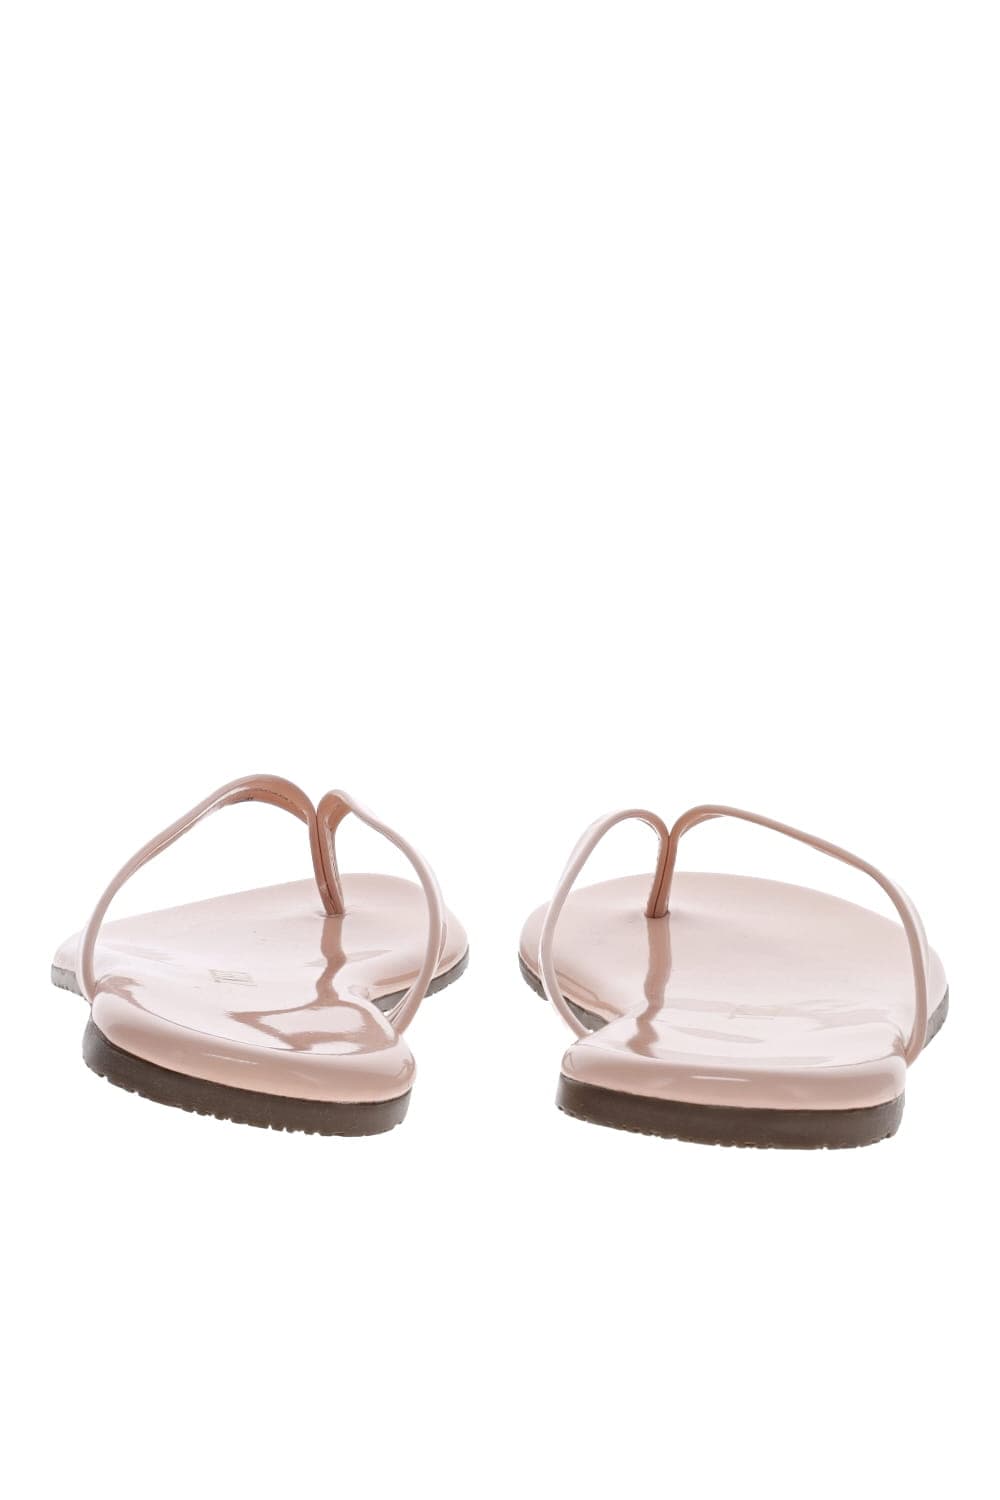 TKEES Glosses Sandal GO-9 Whipped Cream